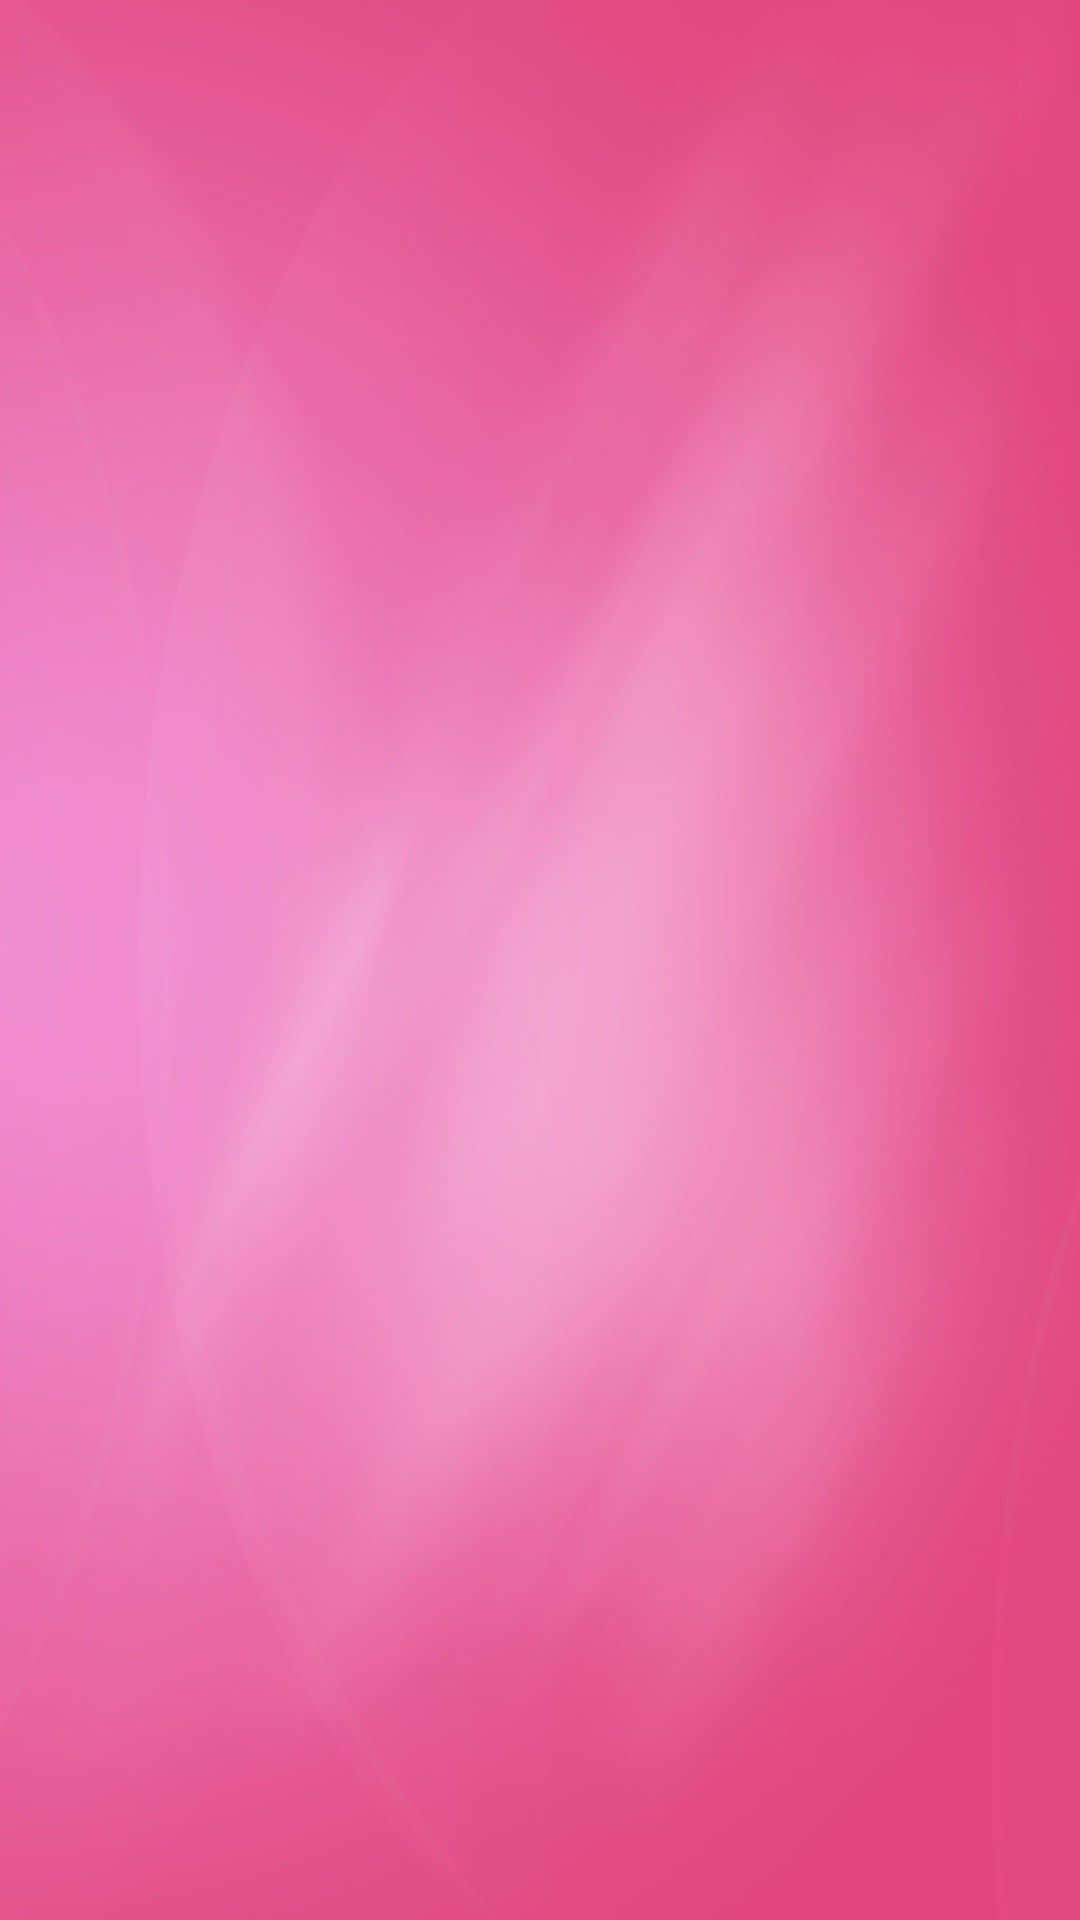 Mesmerizing Pink iPhone Background